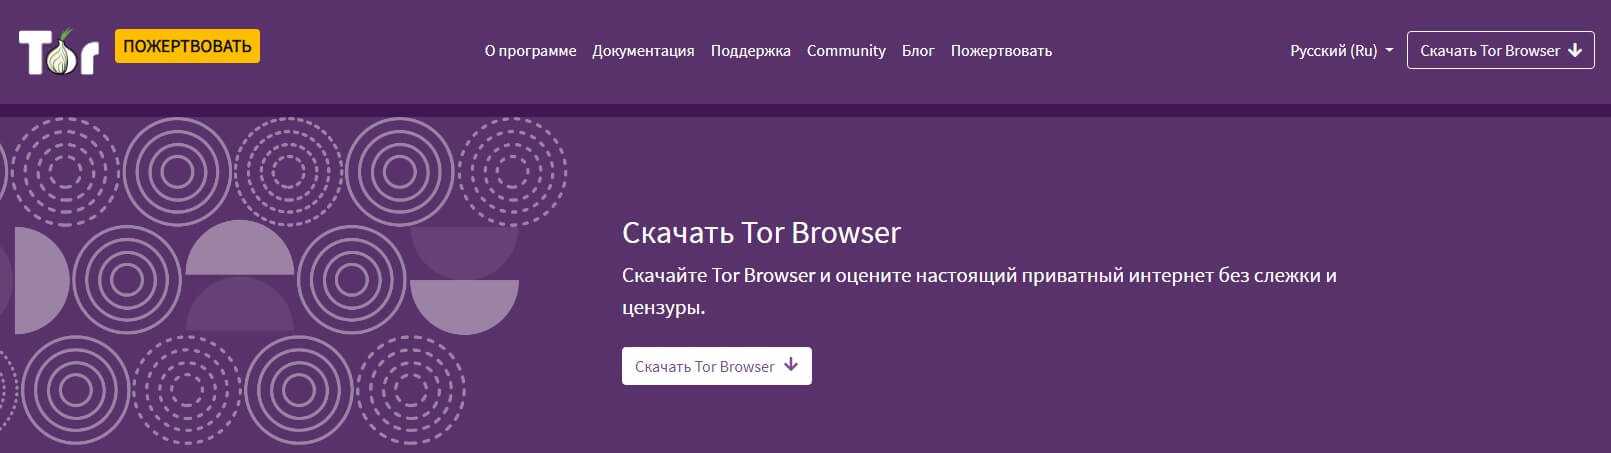 Как зайти на сайт darknet hidra официальный сайт tor browser hyrda вход